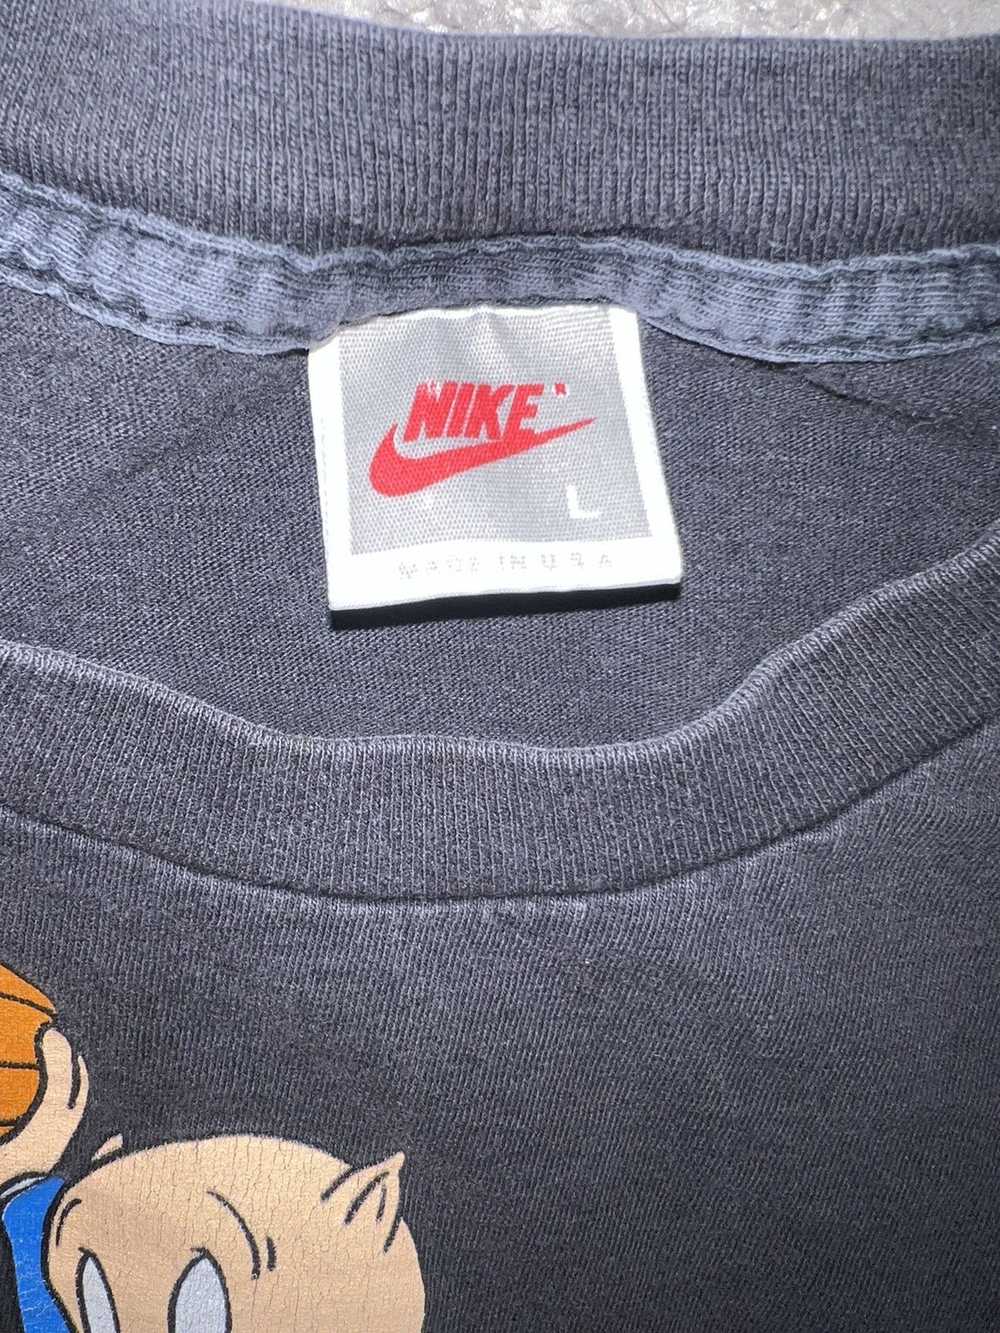 Jordan Brand × Nike × Vintage Vintage 1992 Looney… - image 4